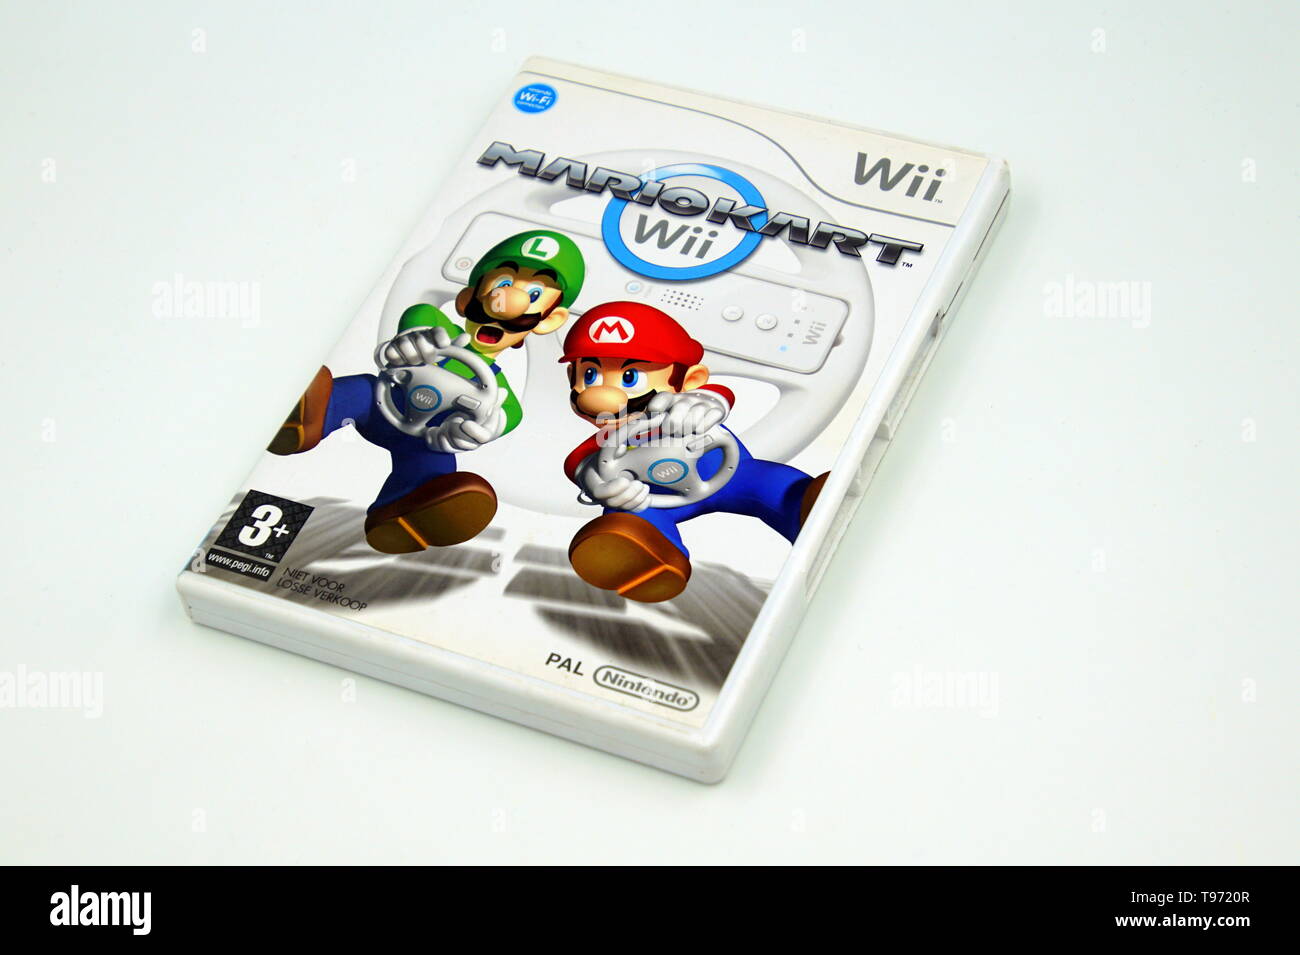 stout Minimaal Oppervlakkig Nintendo Wii game Mario Kart against a white background Stock Photo - Alamy